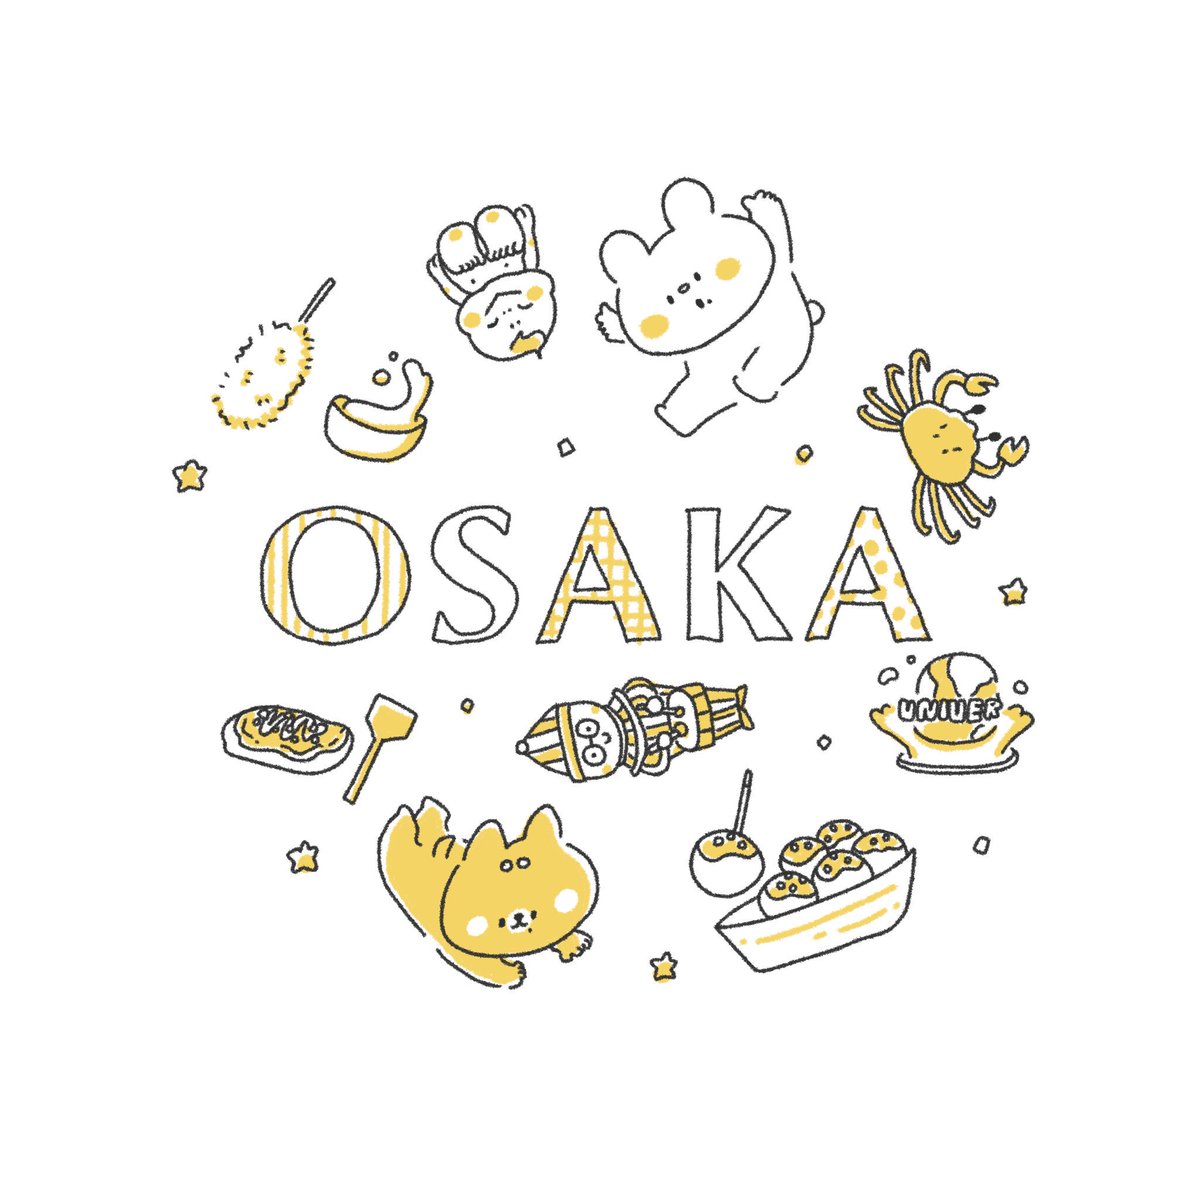 【 ?9月は大阪強化月間? 】

画像にある通り、今月は大阪でのイベントが盛りだくさん!
ぜひともみなさまお気軽にお越しくださいませ!一日でもいいのでみんなたちに会えますように☺️

詳細などは随時ツイートしてくので、チェケラ〜!!

#しろくまななみん 